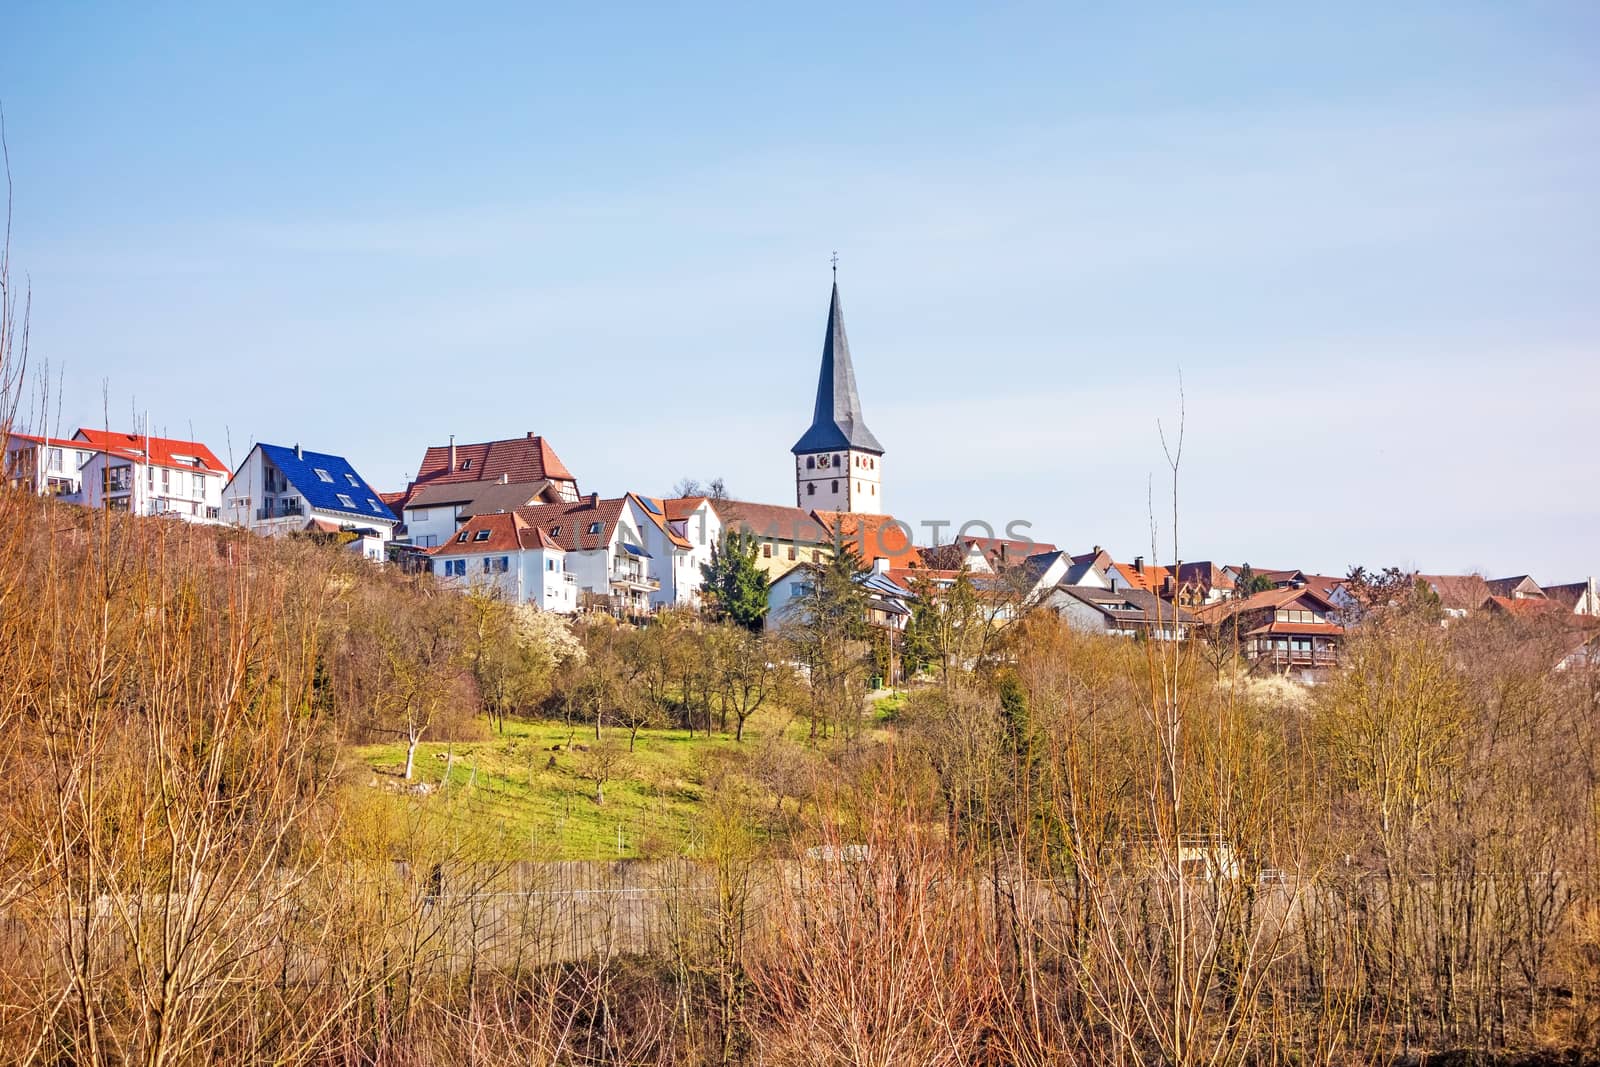 Village of Poppenweiler - skyline with church by aldorado